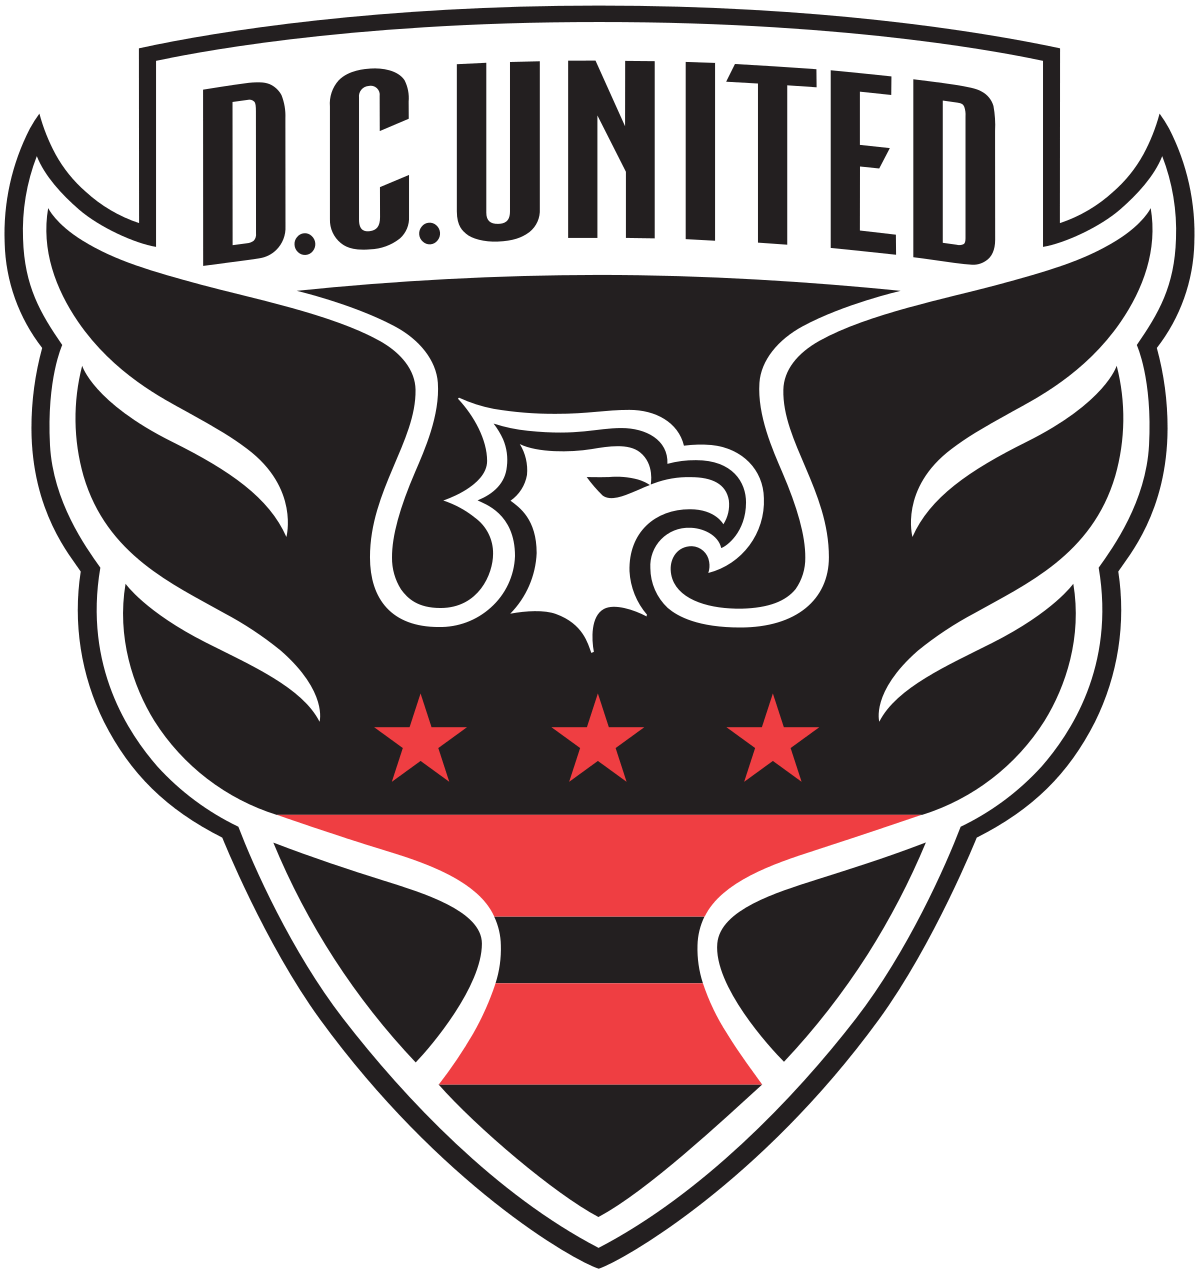 United Soccer Logo - D.C. United